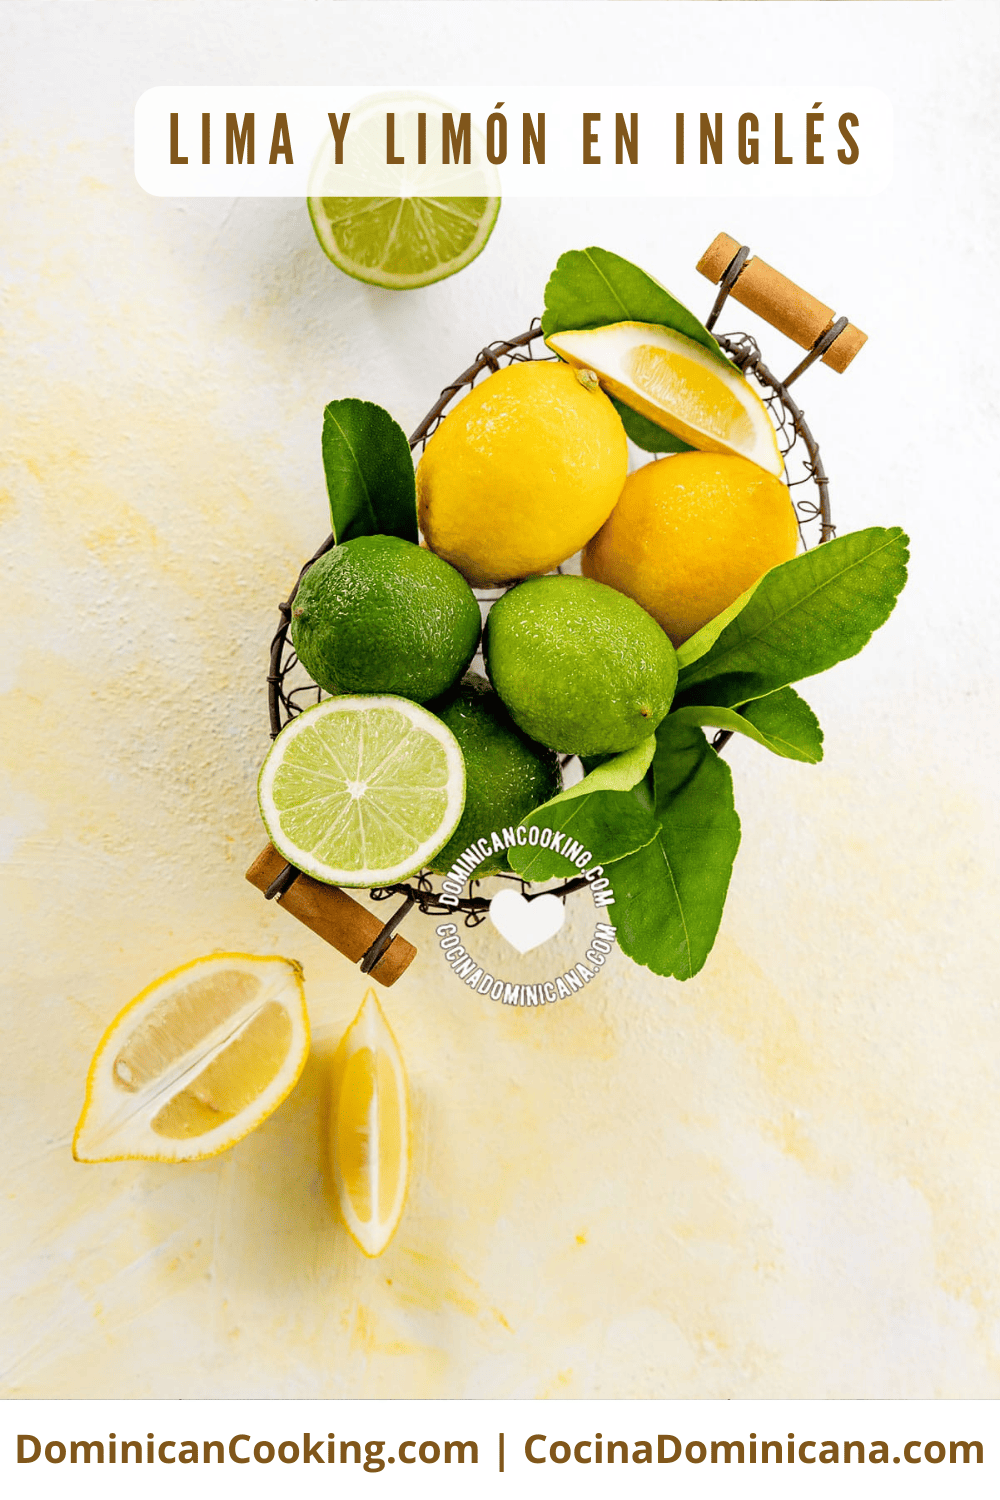 Lima y limón en inglés.